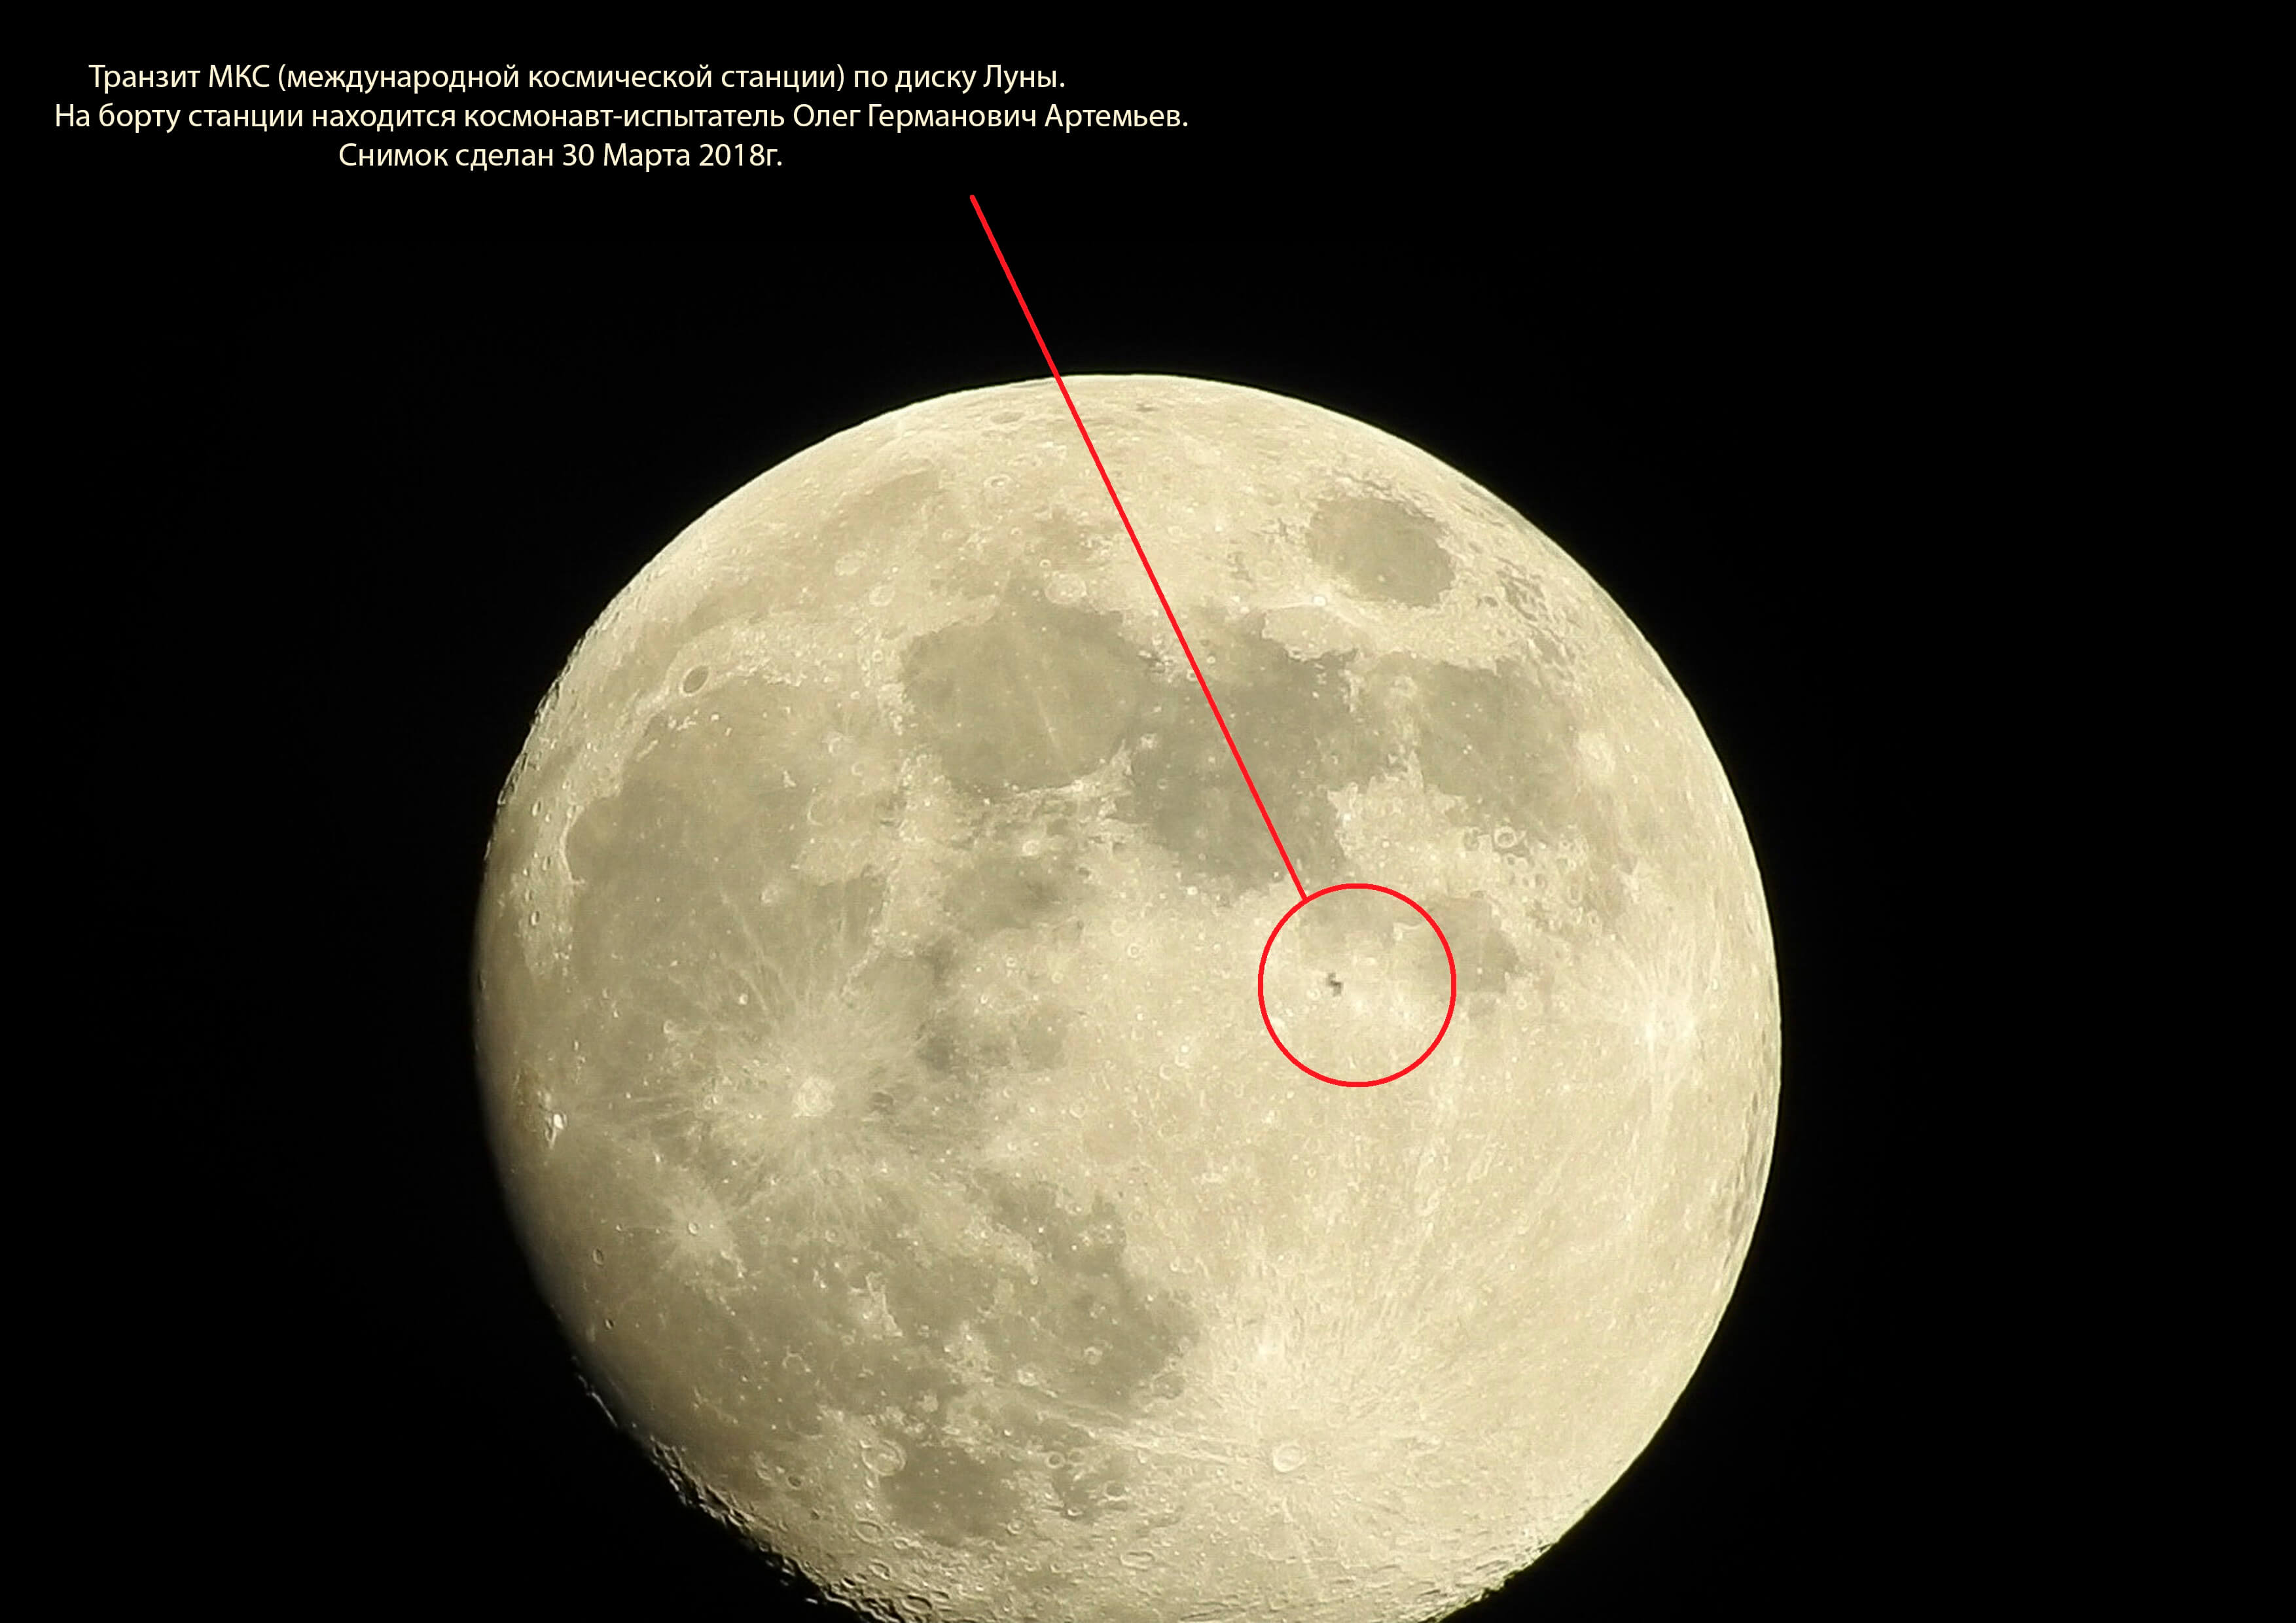 Транзит луна трин луна. Транзит МКС по Луне. Транзит МКС по диску Луны. МКС на лунном диске. МКС на фоне Луны.